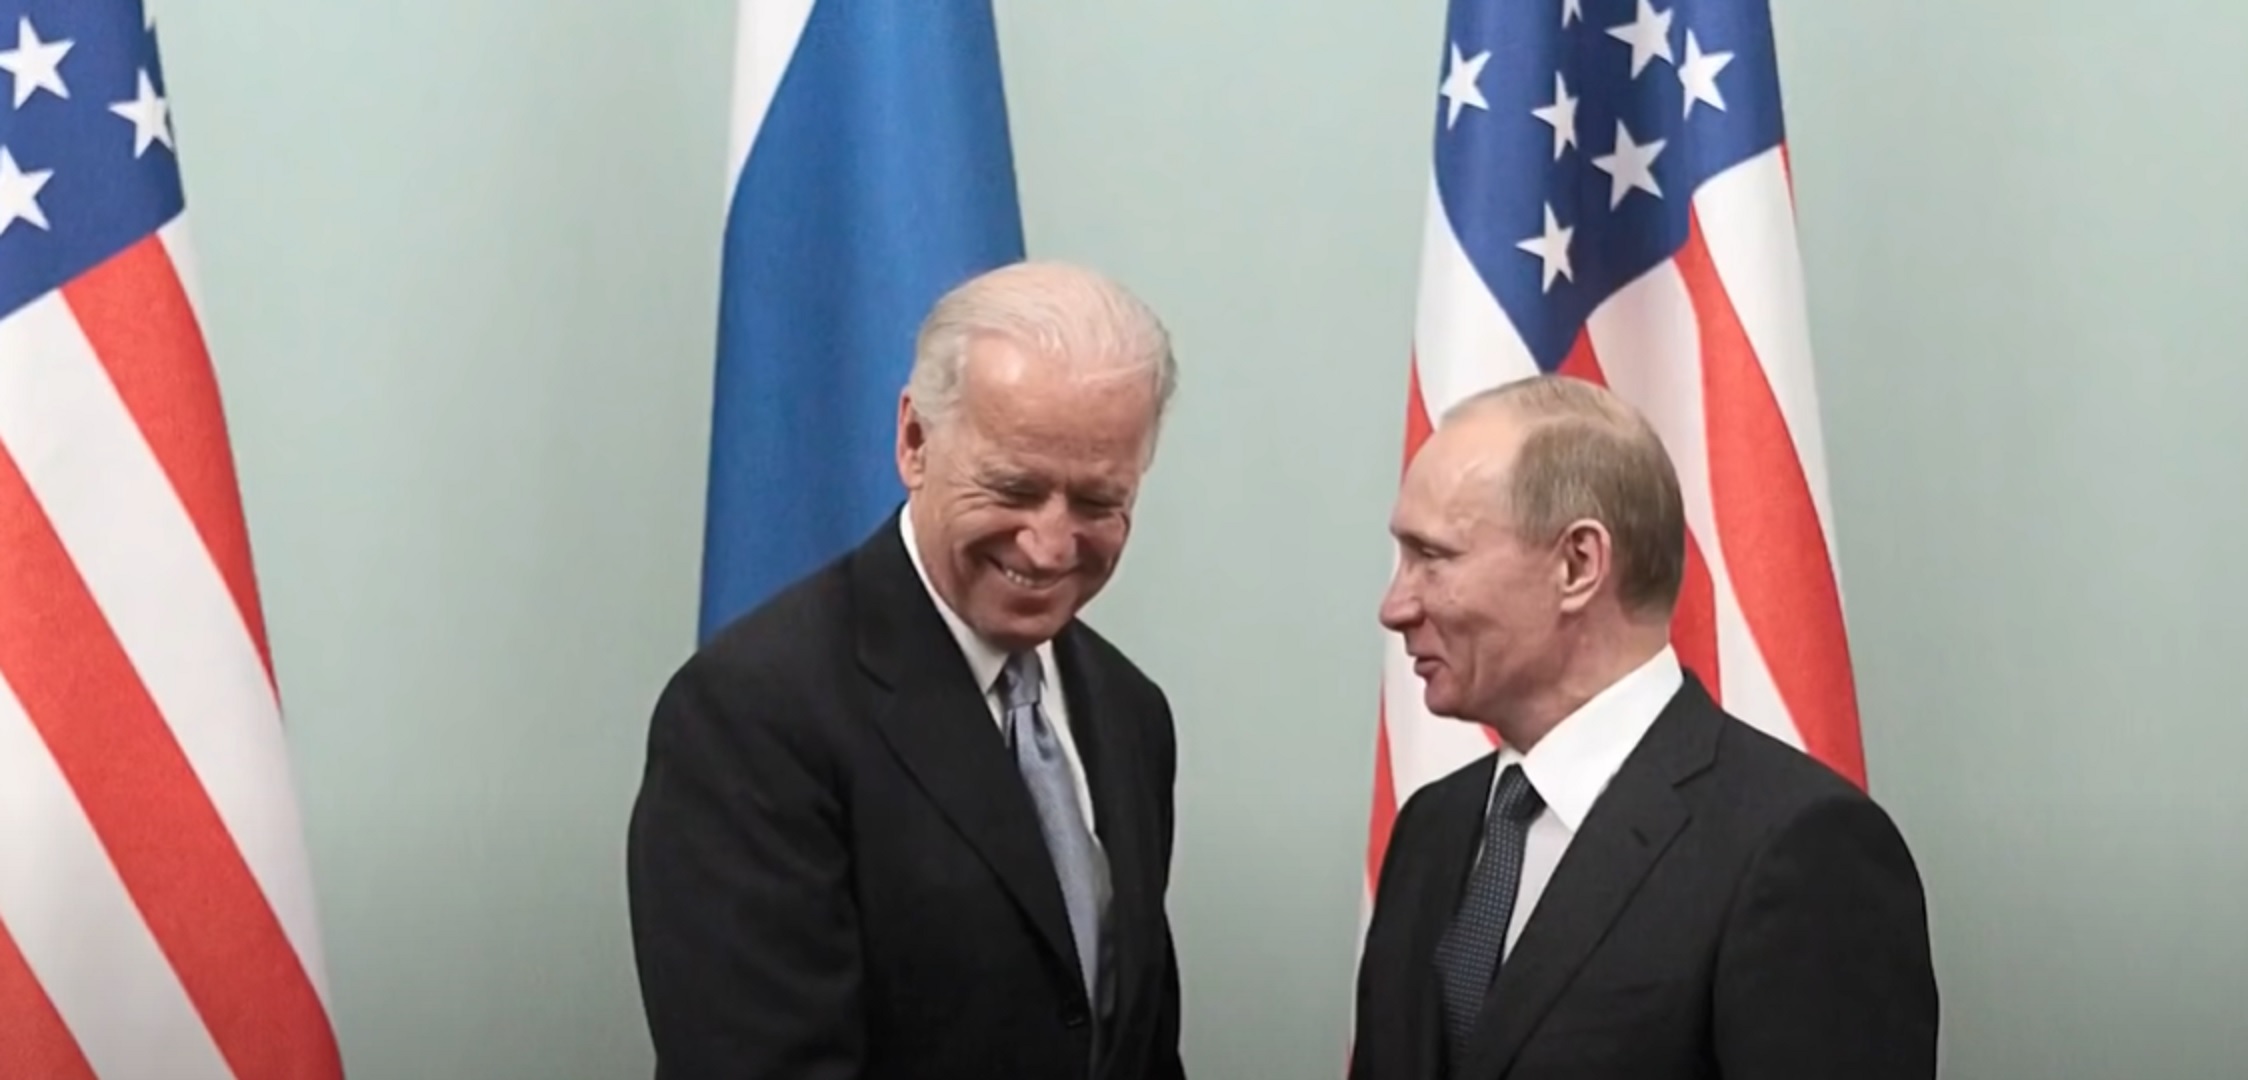 propolski.pl: Joe Biden po długiej rozmowie z Władimirem Putinem. "Wyraził zaniepokojenie"